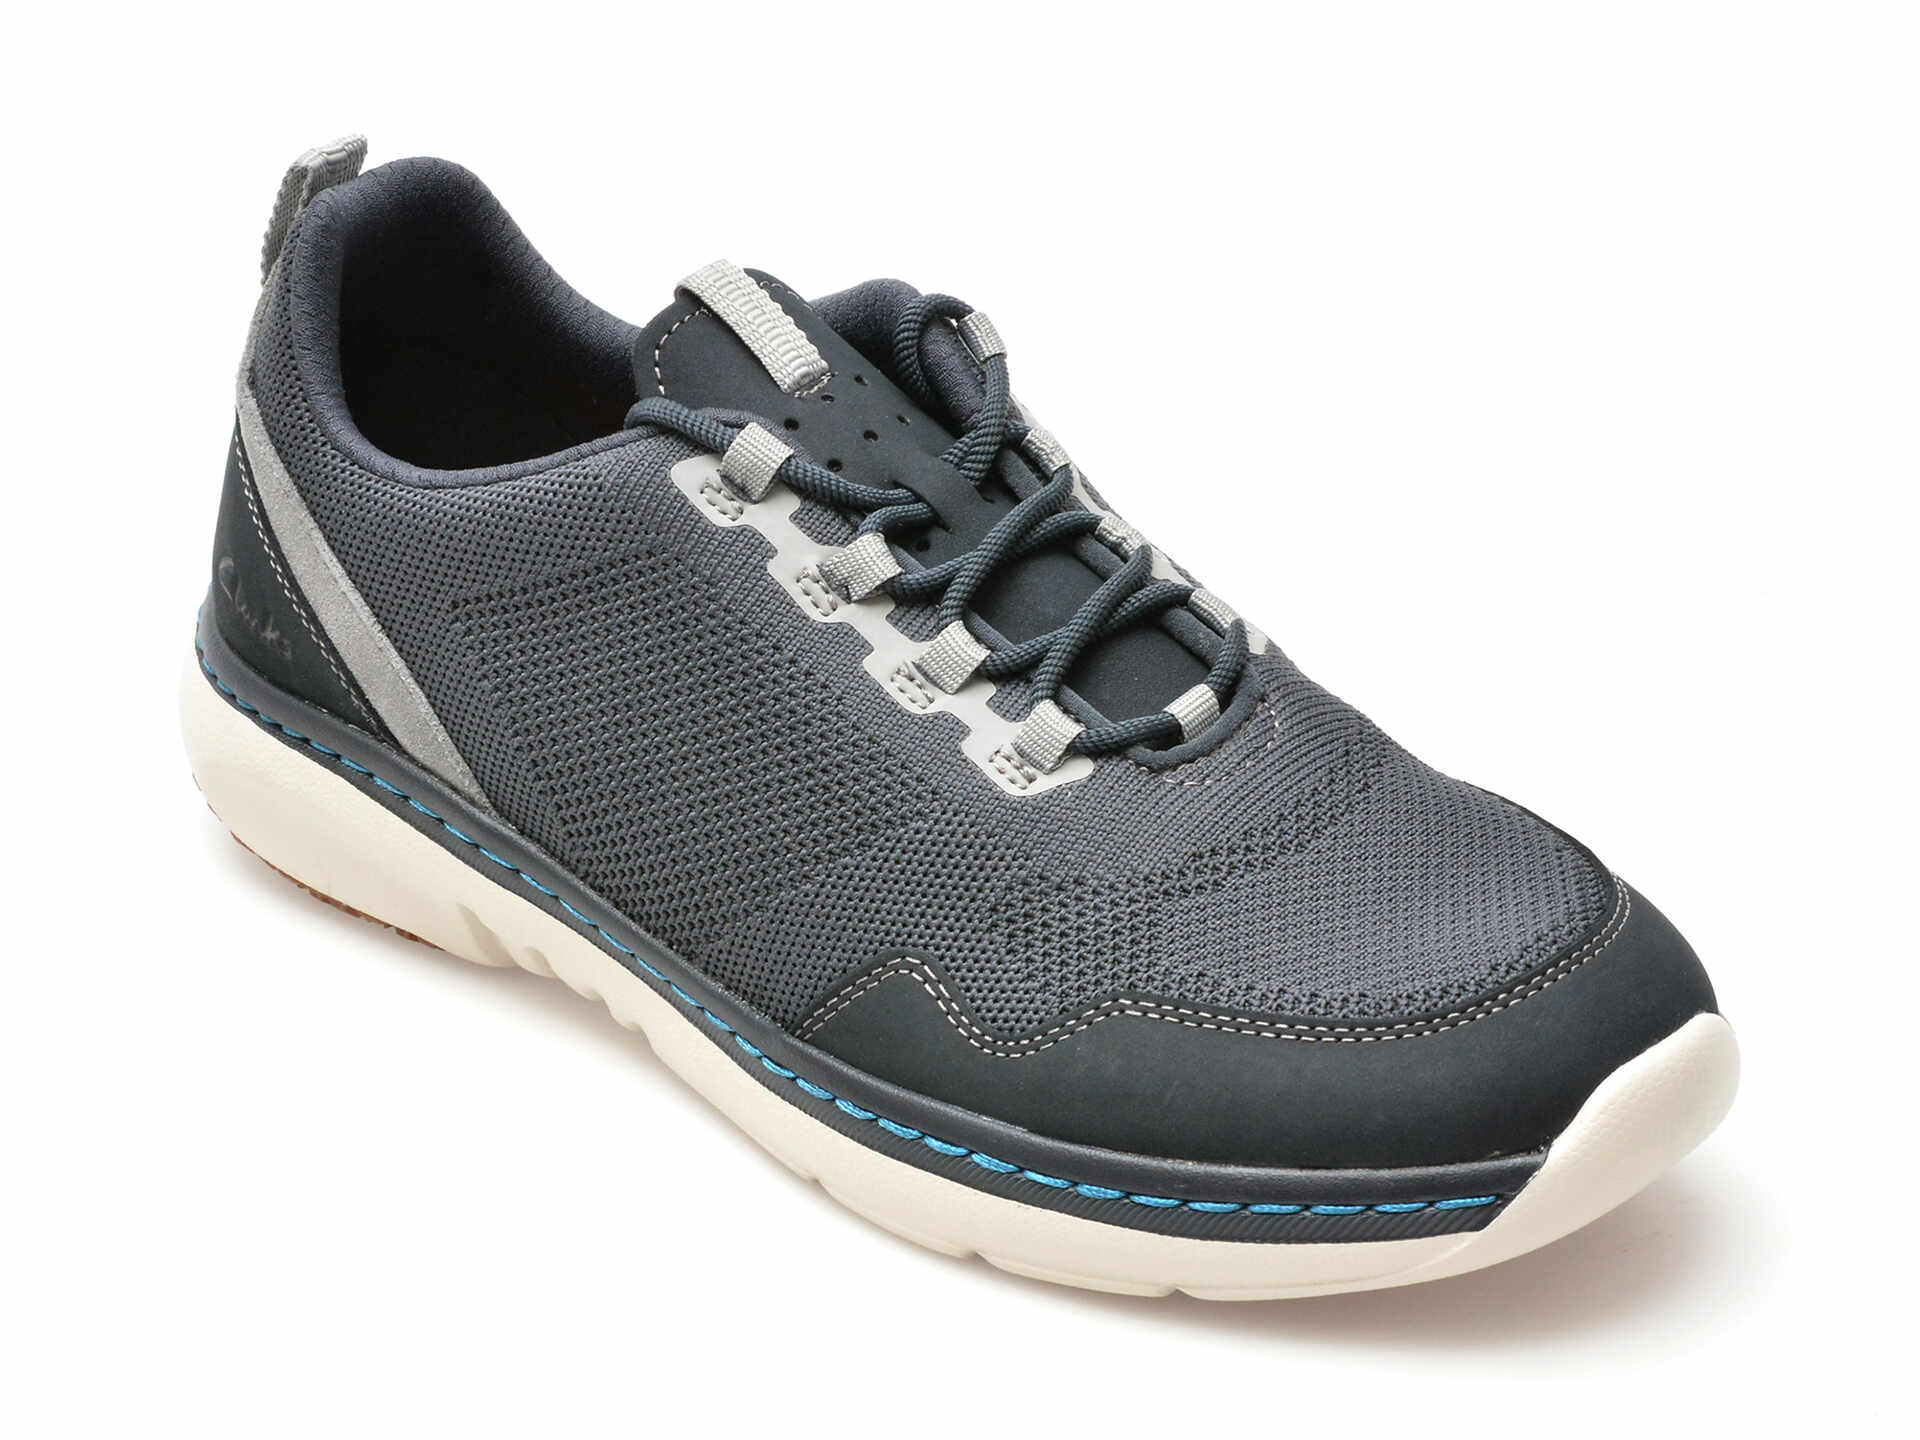 Pantofi CLARKS bleumarin, CLARKS PRO KNIT, din material textil